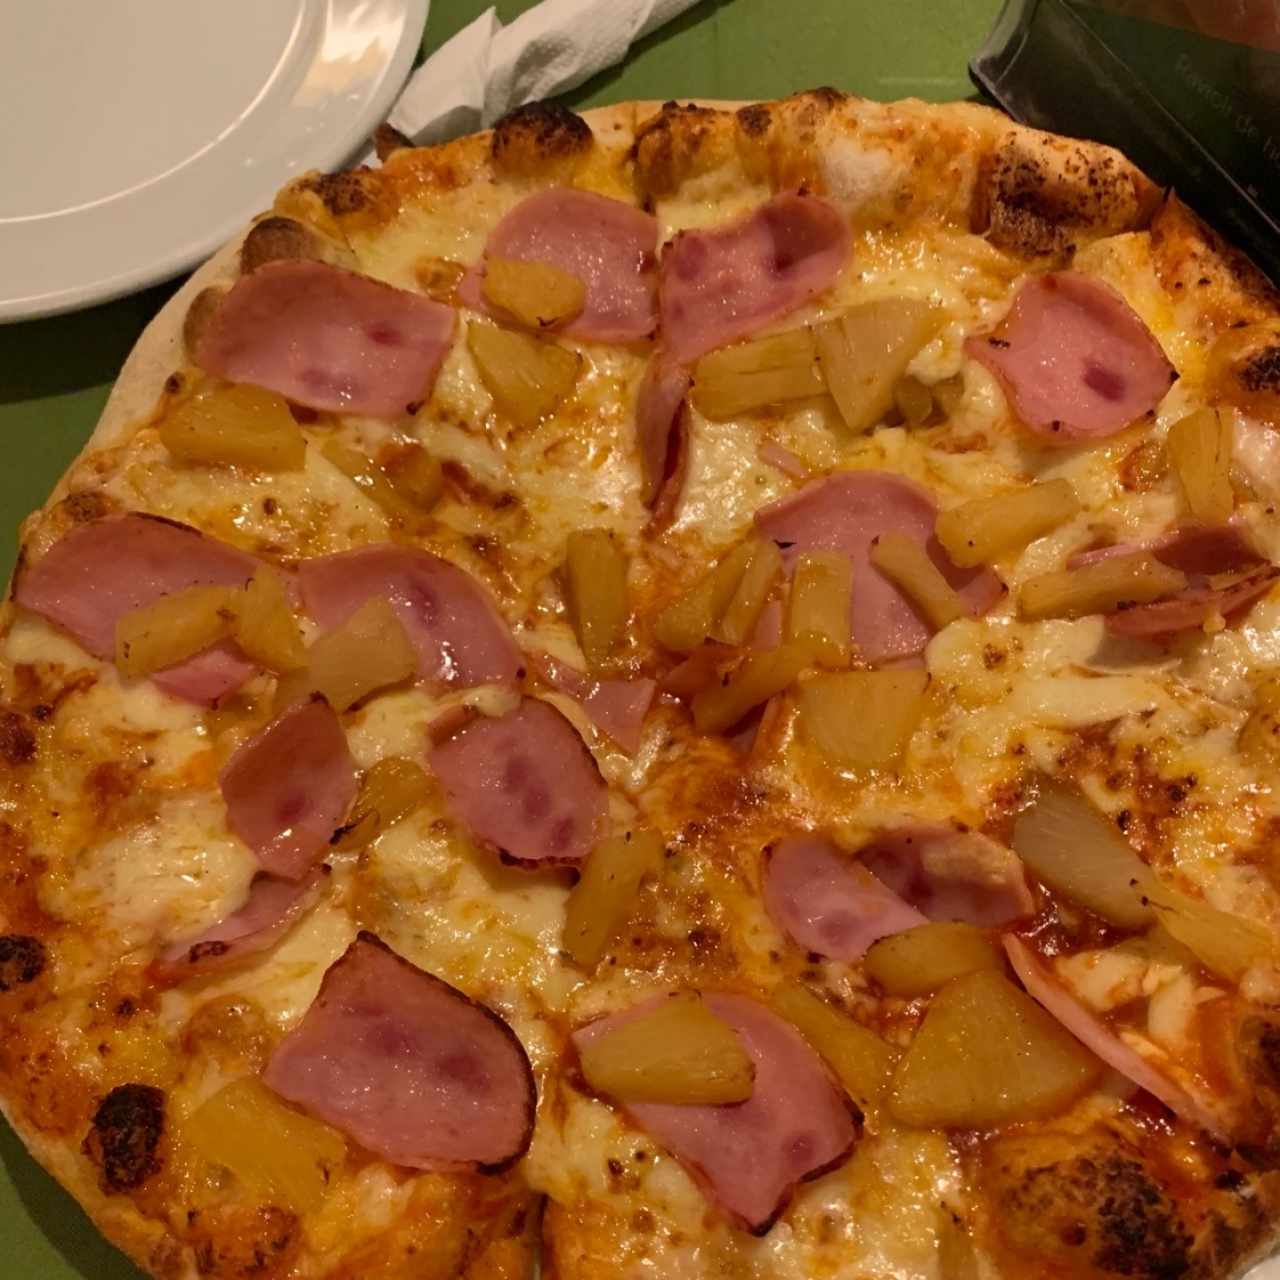 pizza hawaiana